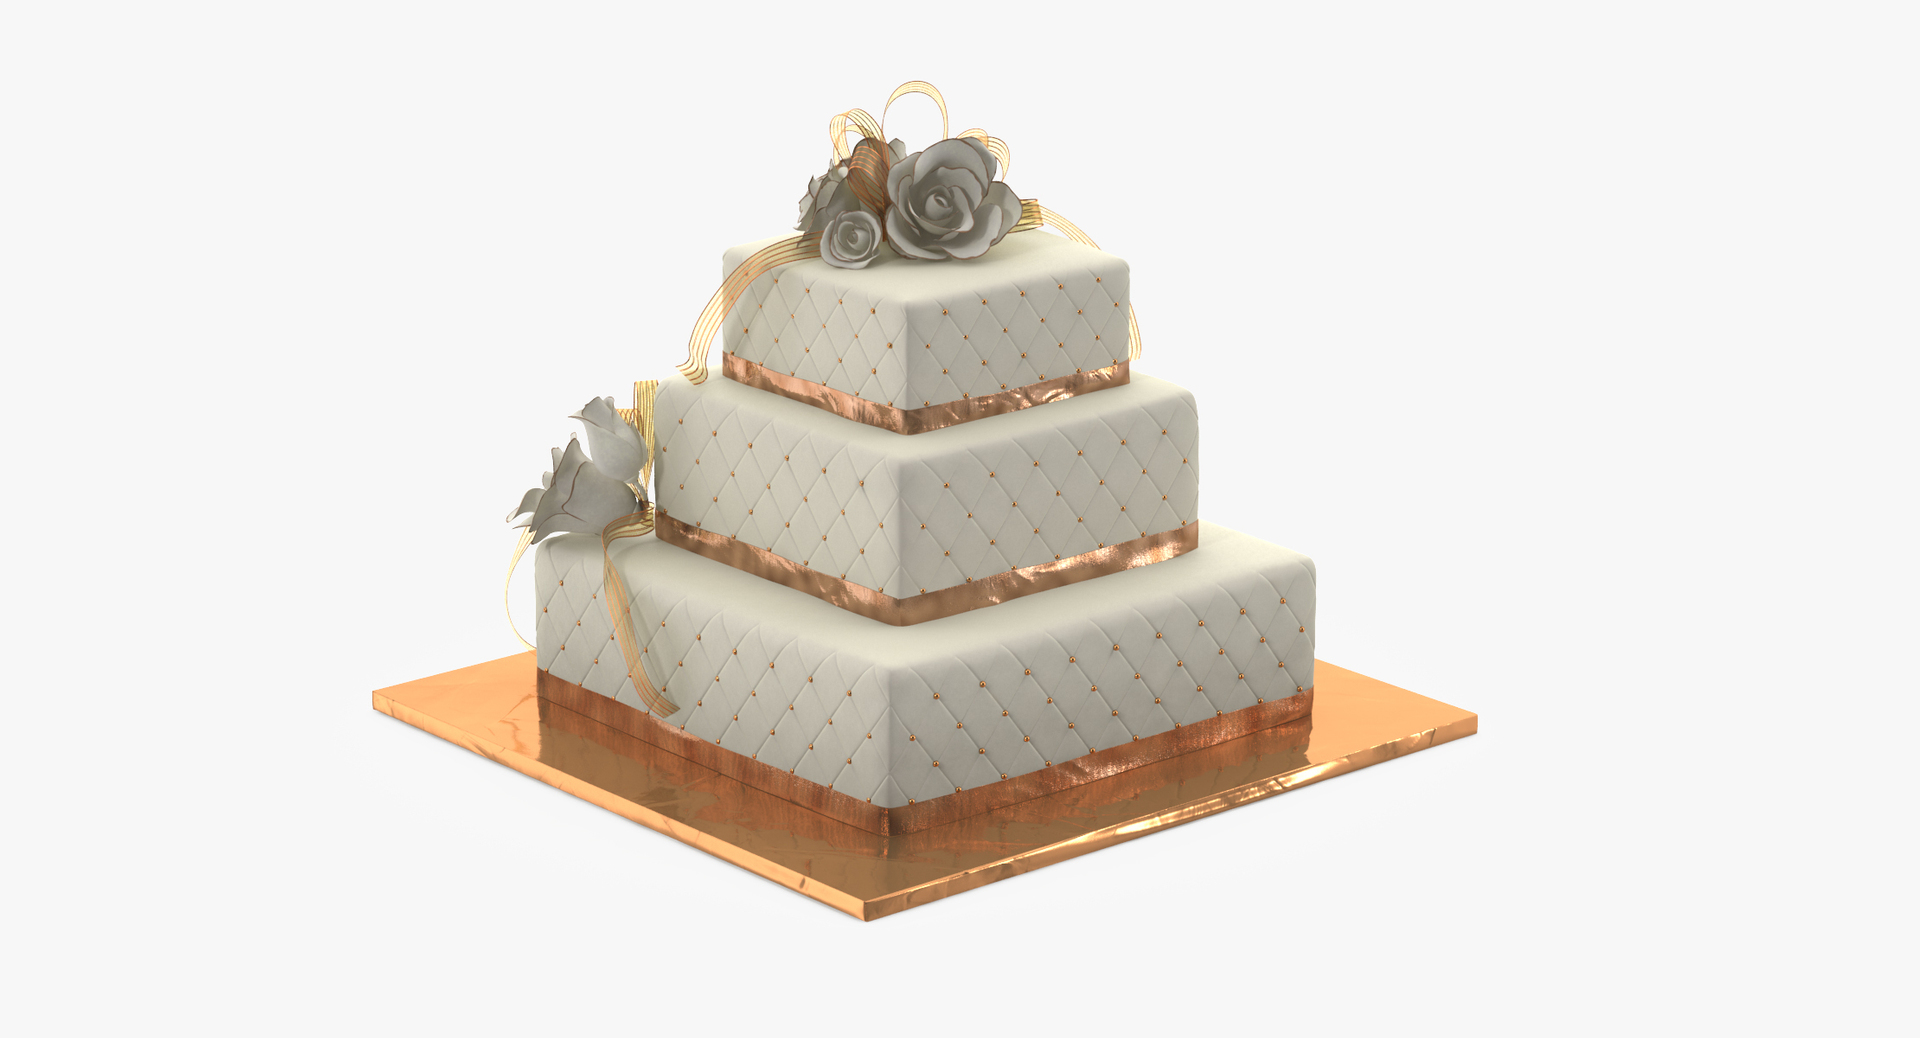 birthday cake 3D Model in Sweets 3DExport